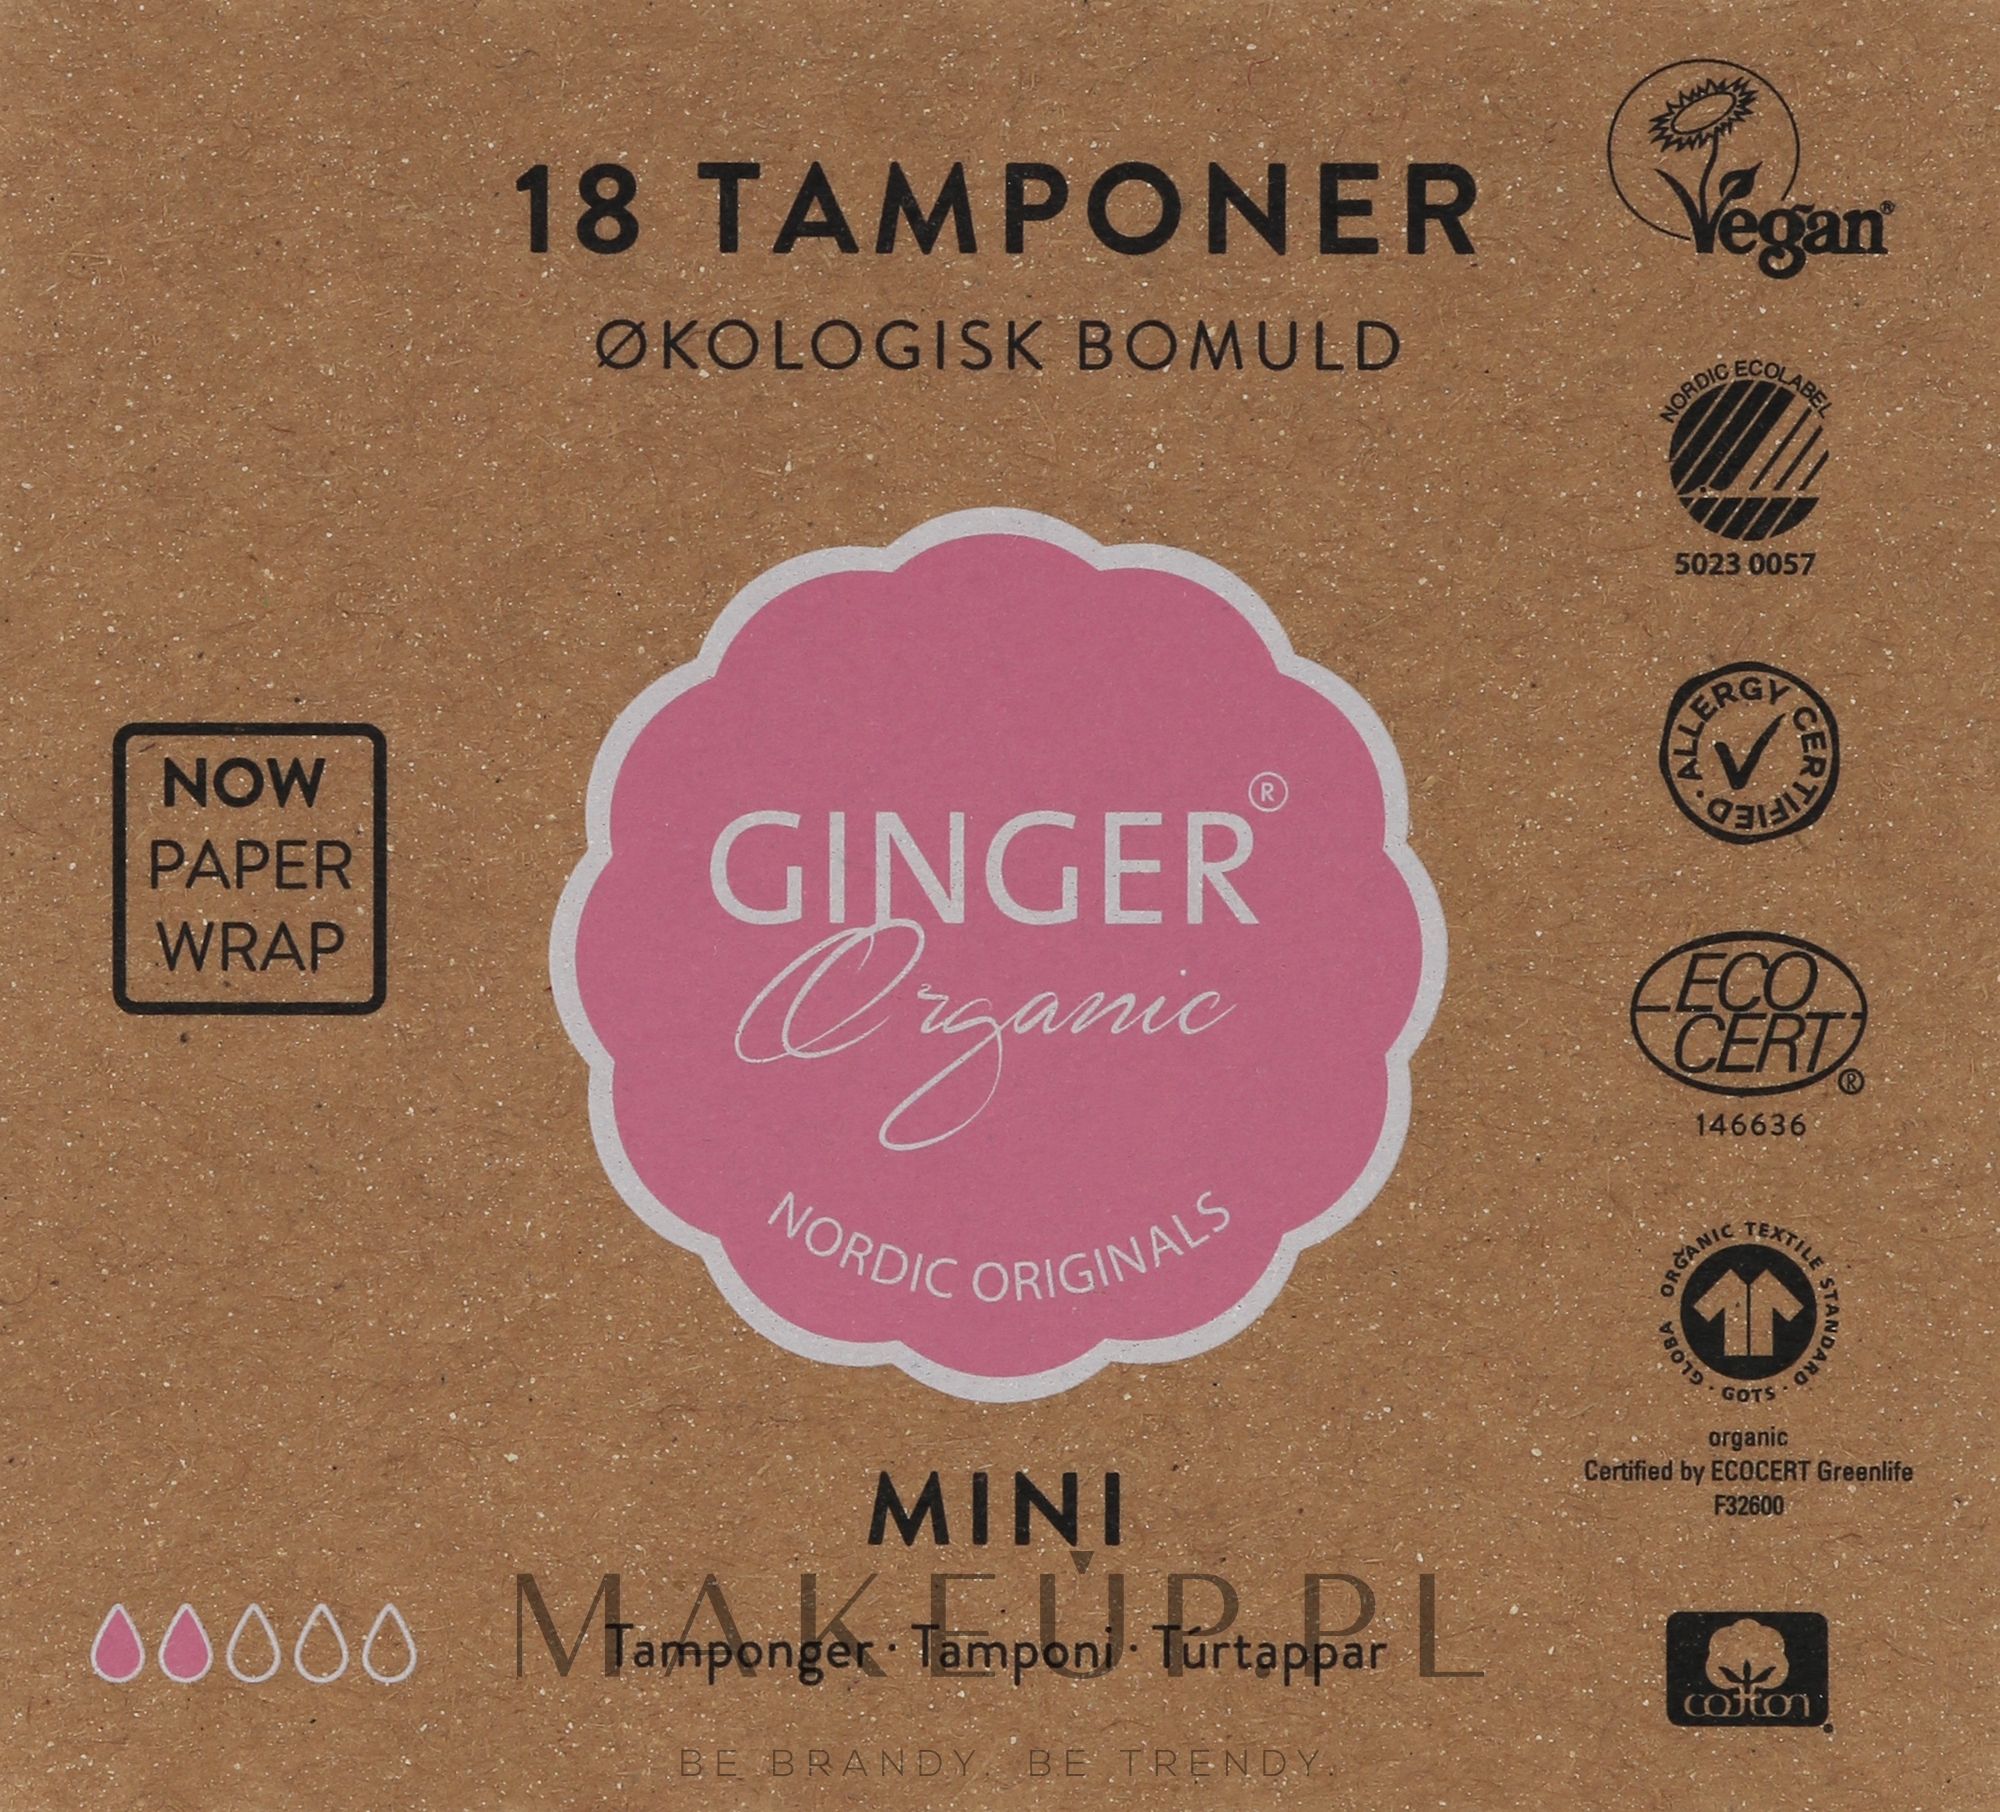 Organiczne tampony bez aplikatora Mini, 18 szt. - Ginger Organic — Zdjęcie 18 szt.